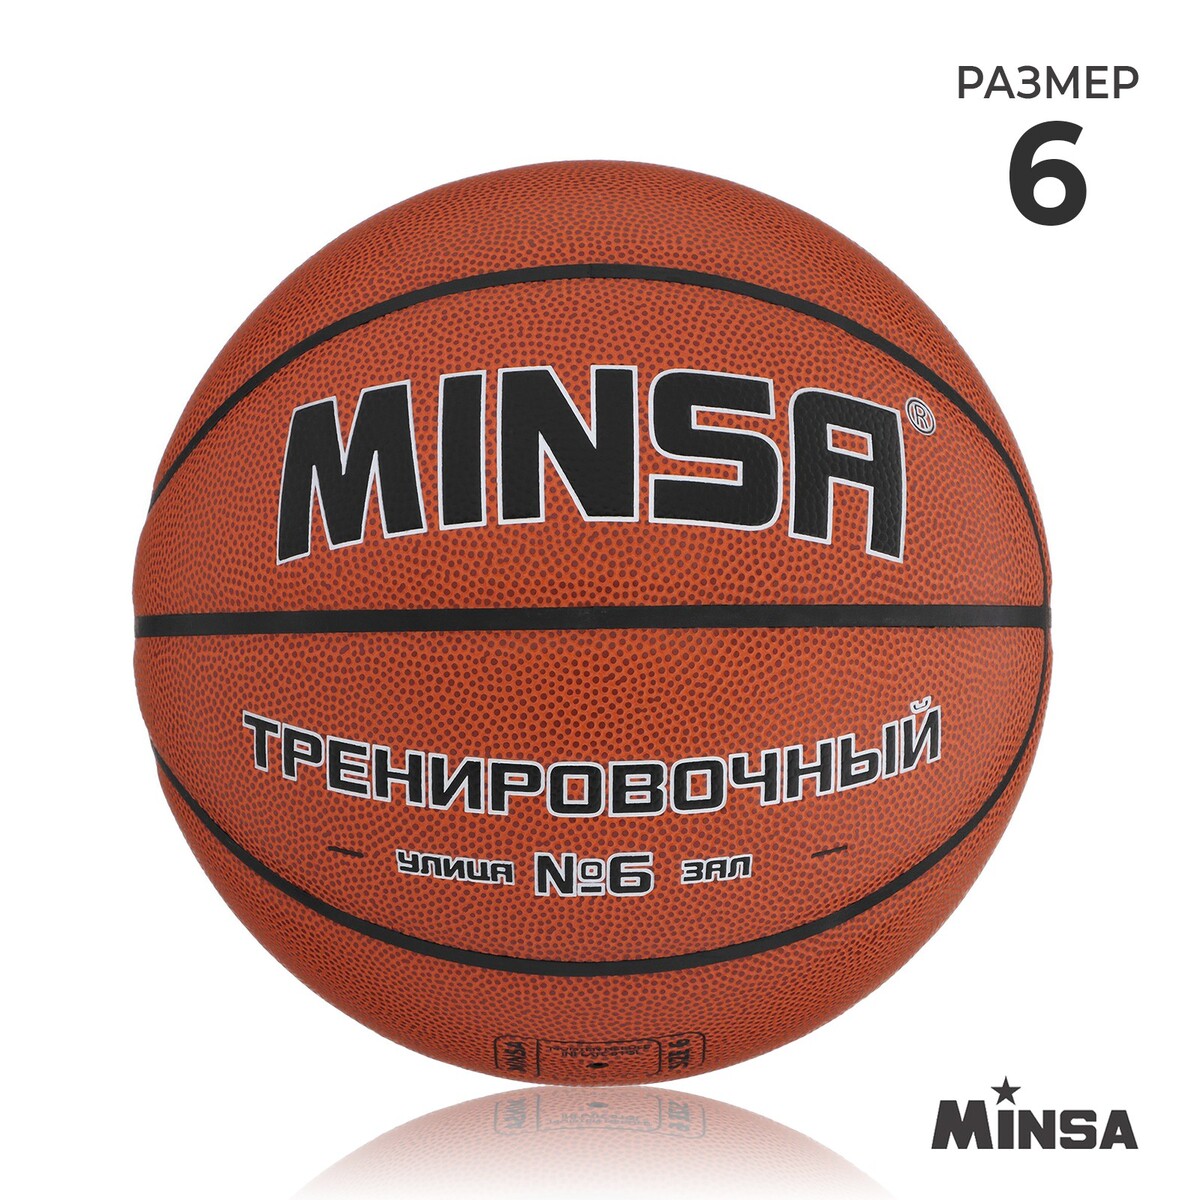 Баскетбольный мяч minsa, тренировочный, pu, клееный, 8 панелей, р. 6 мяч баскетбольный minsa street пвх клееный 8 панелей р 7